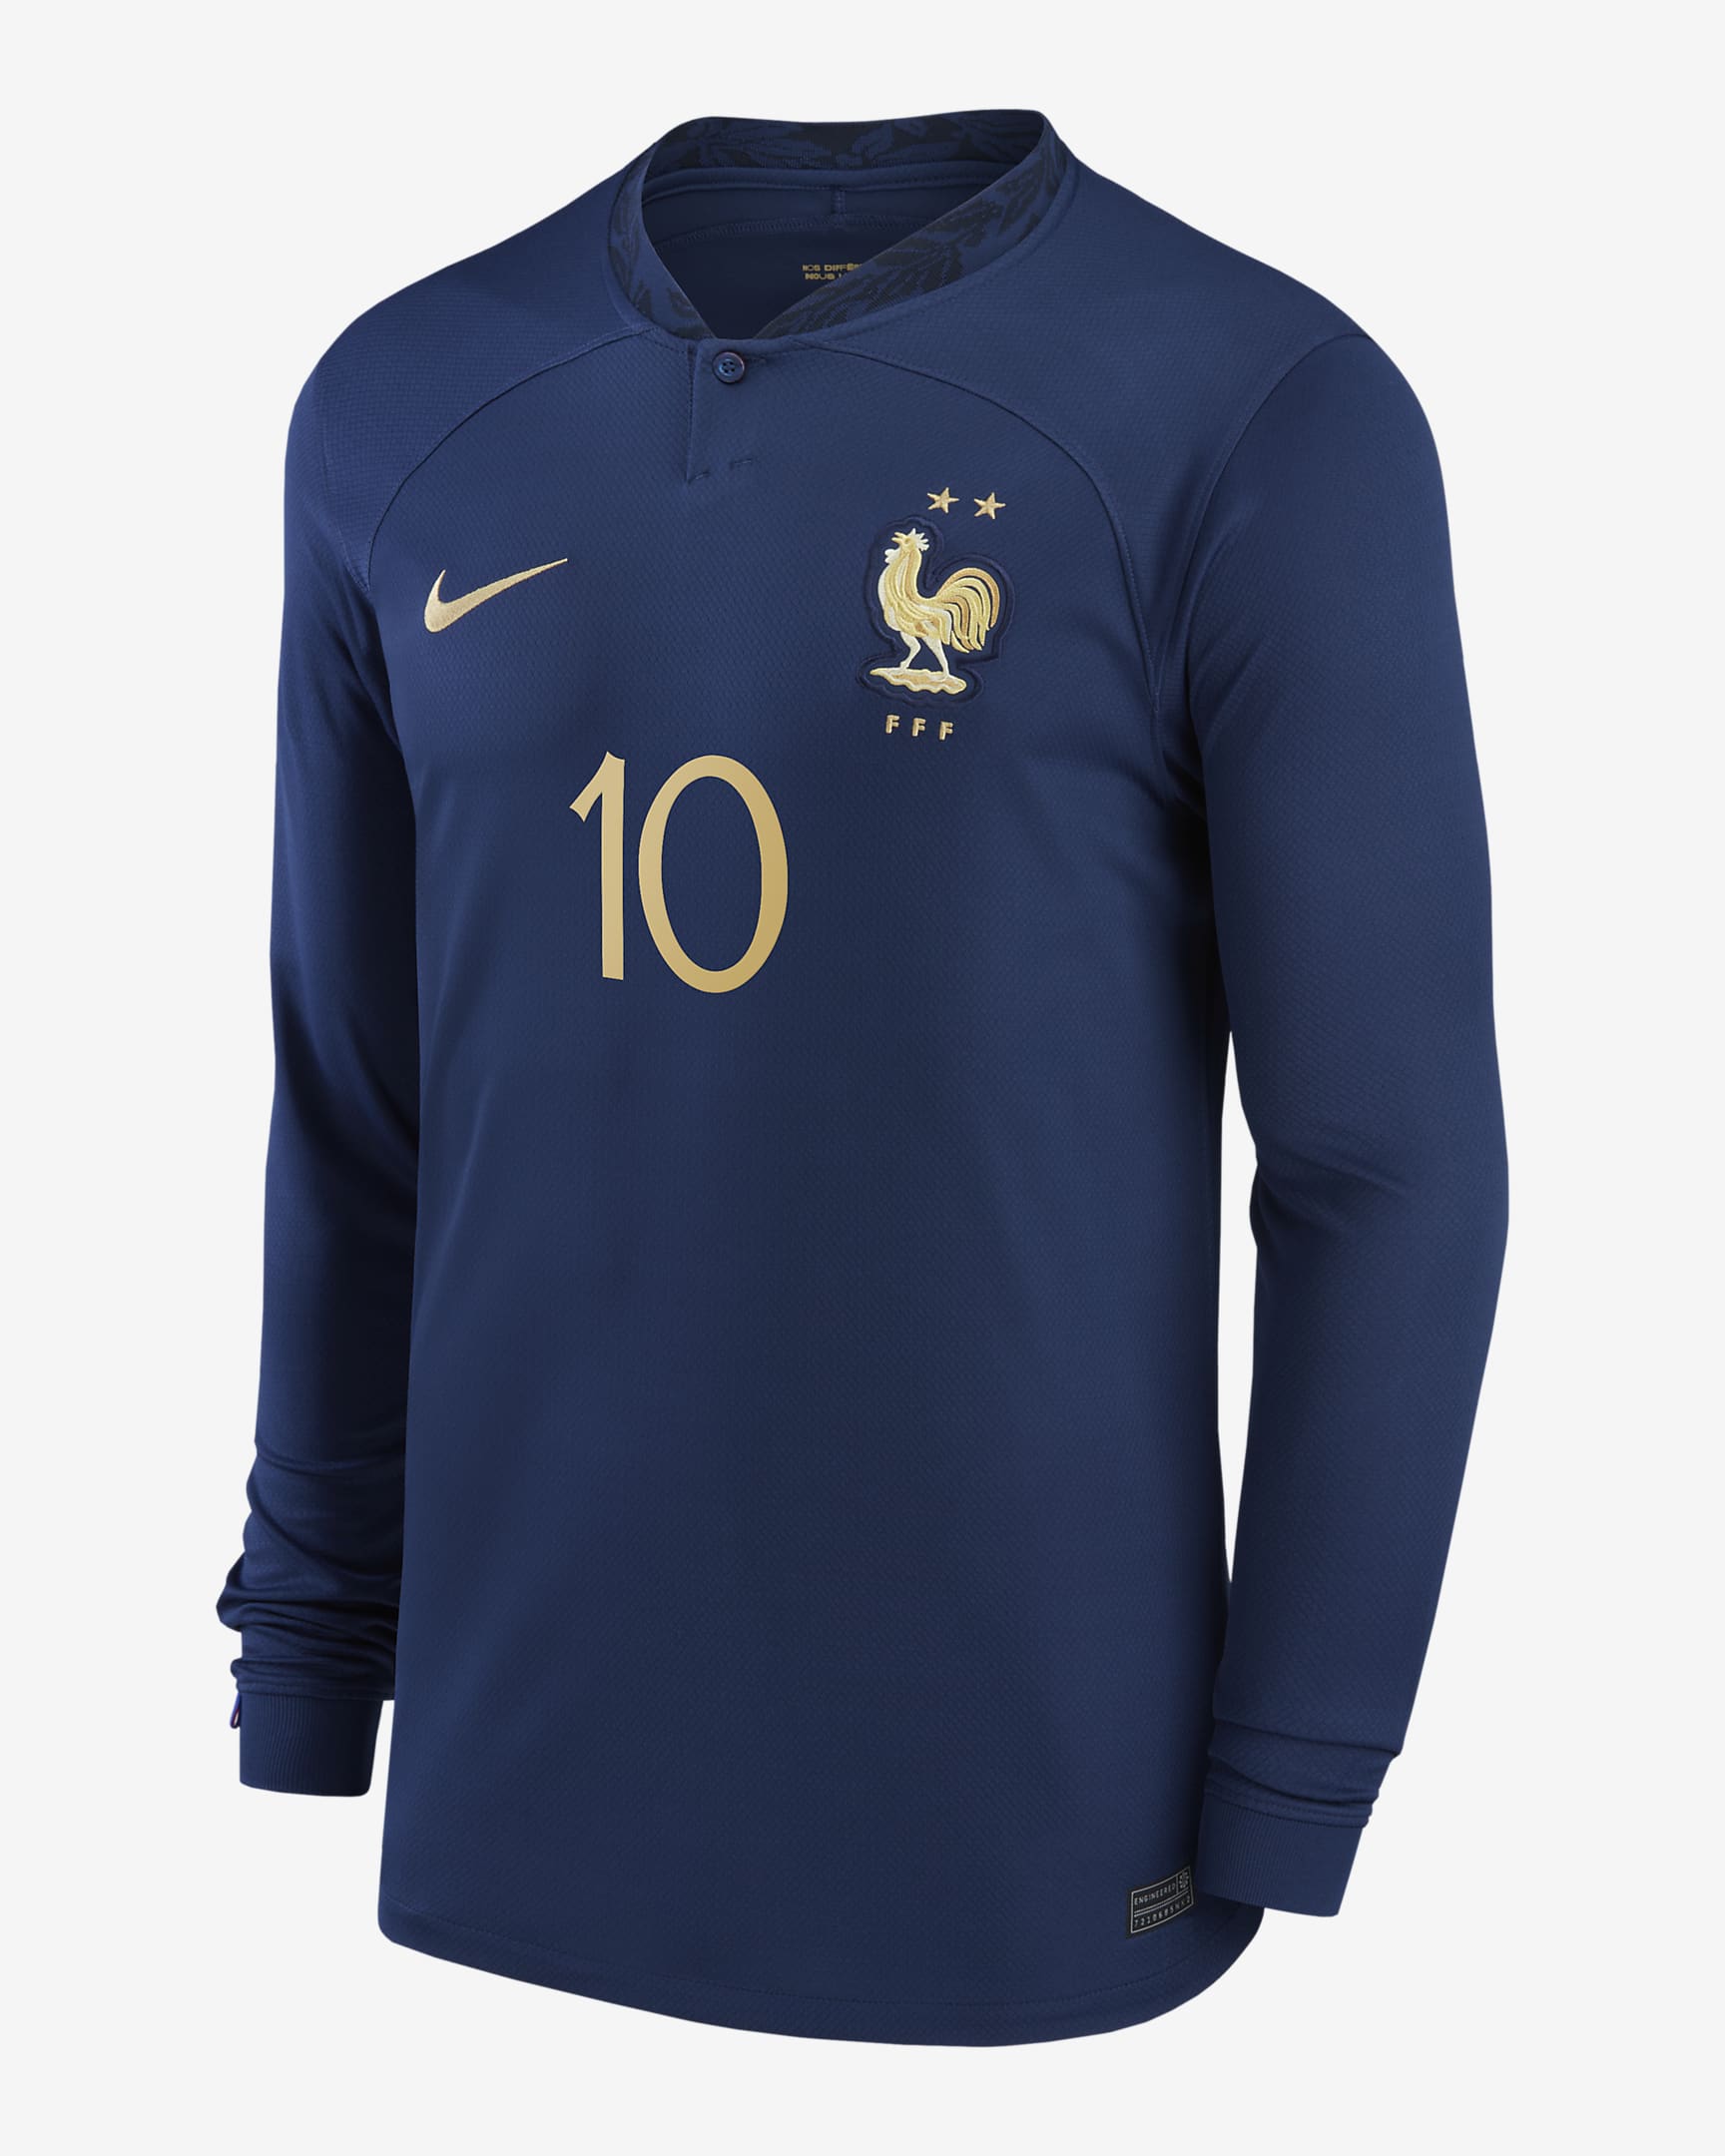 France National Team Stadium Home Kylian Mbappe Men S Nike Dri Fit Long Sleeve Soccer